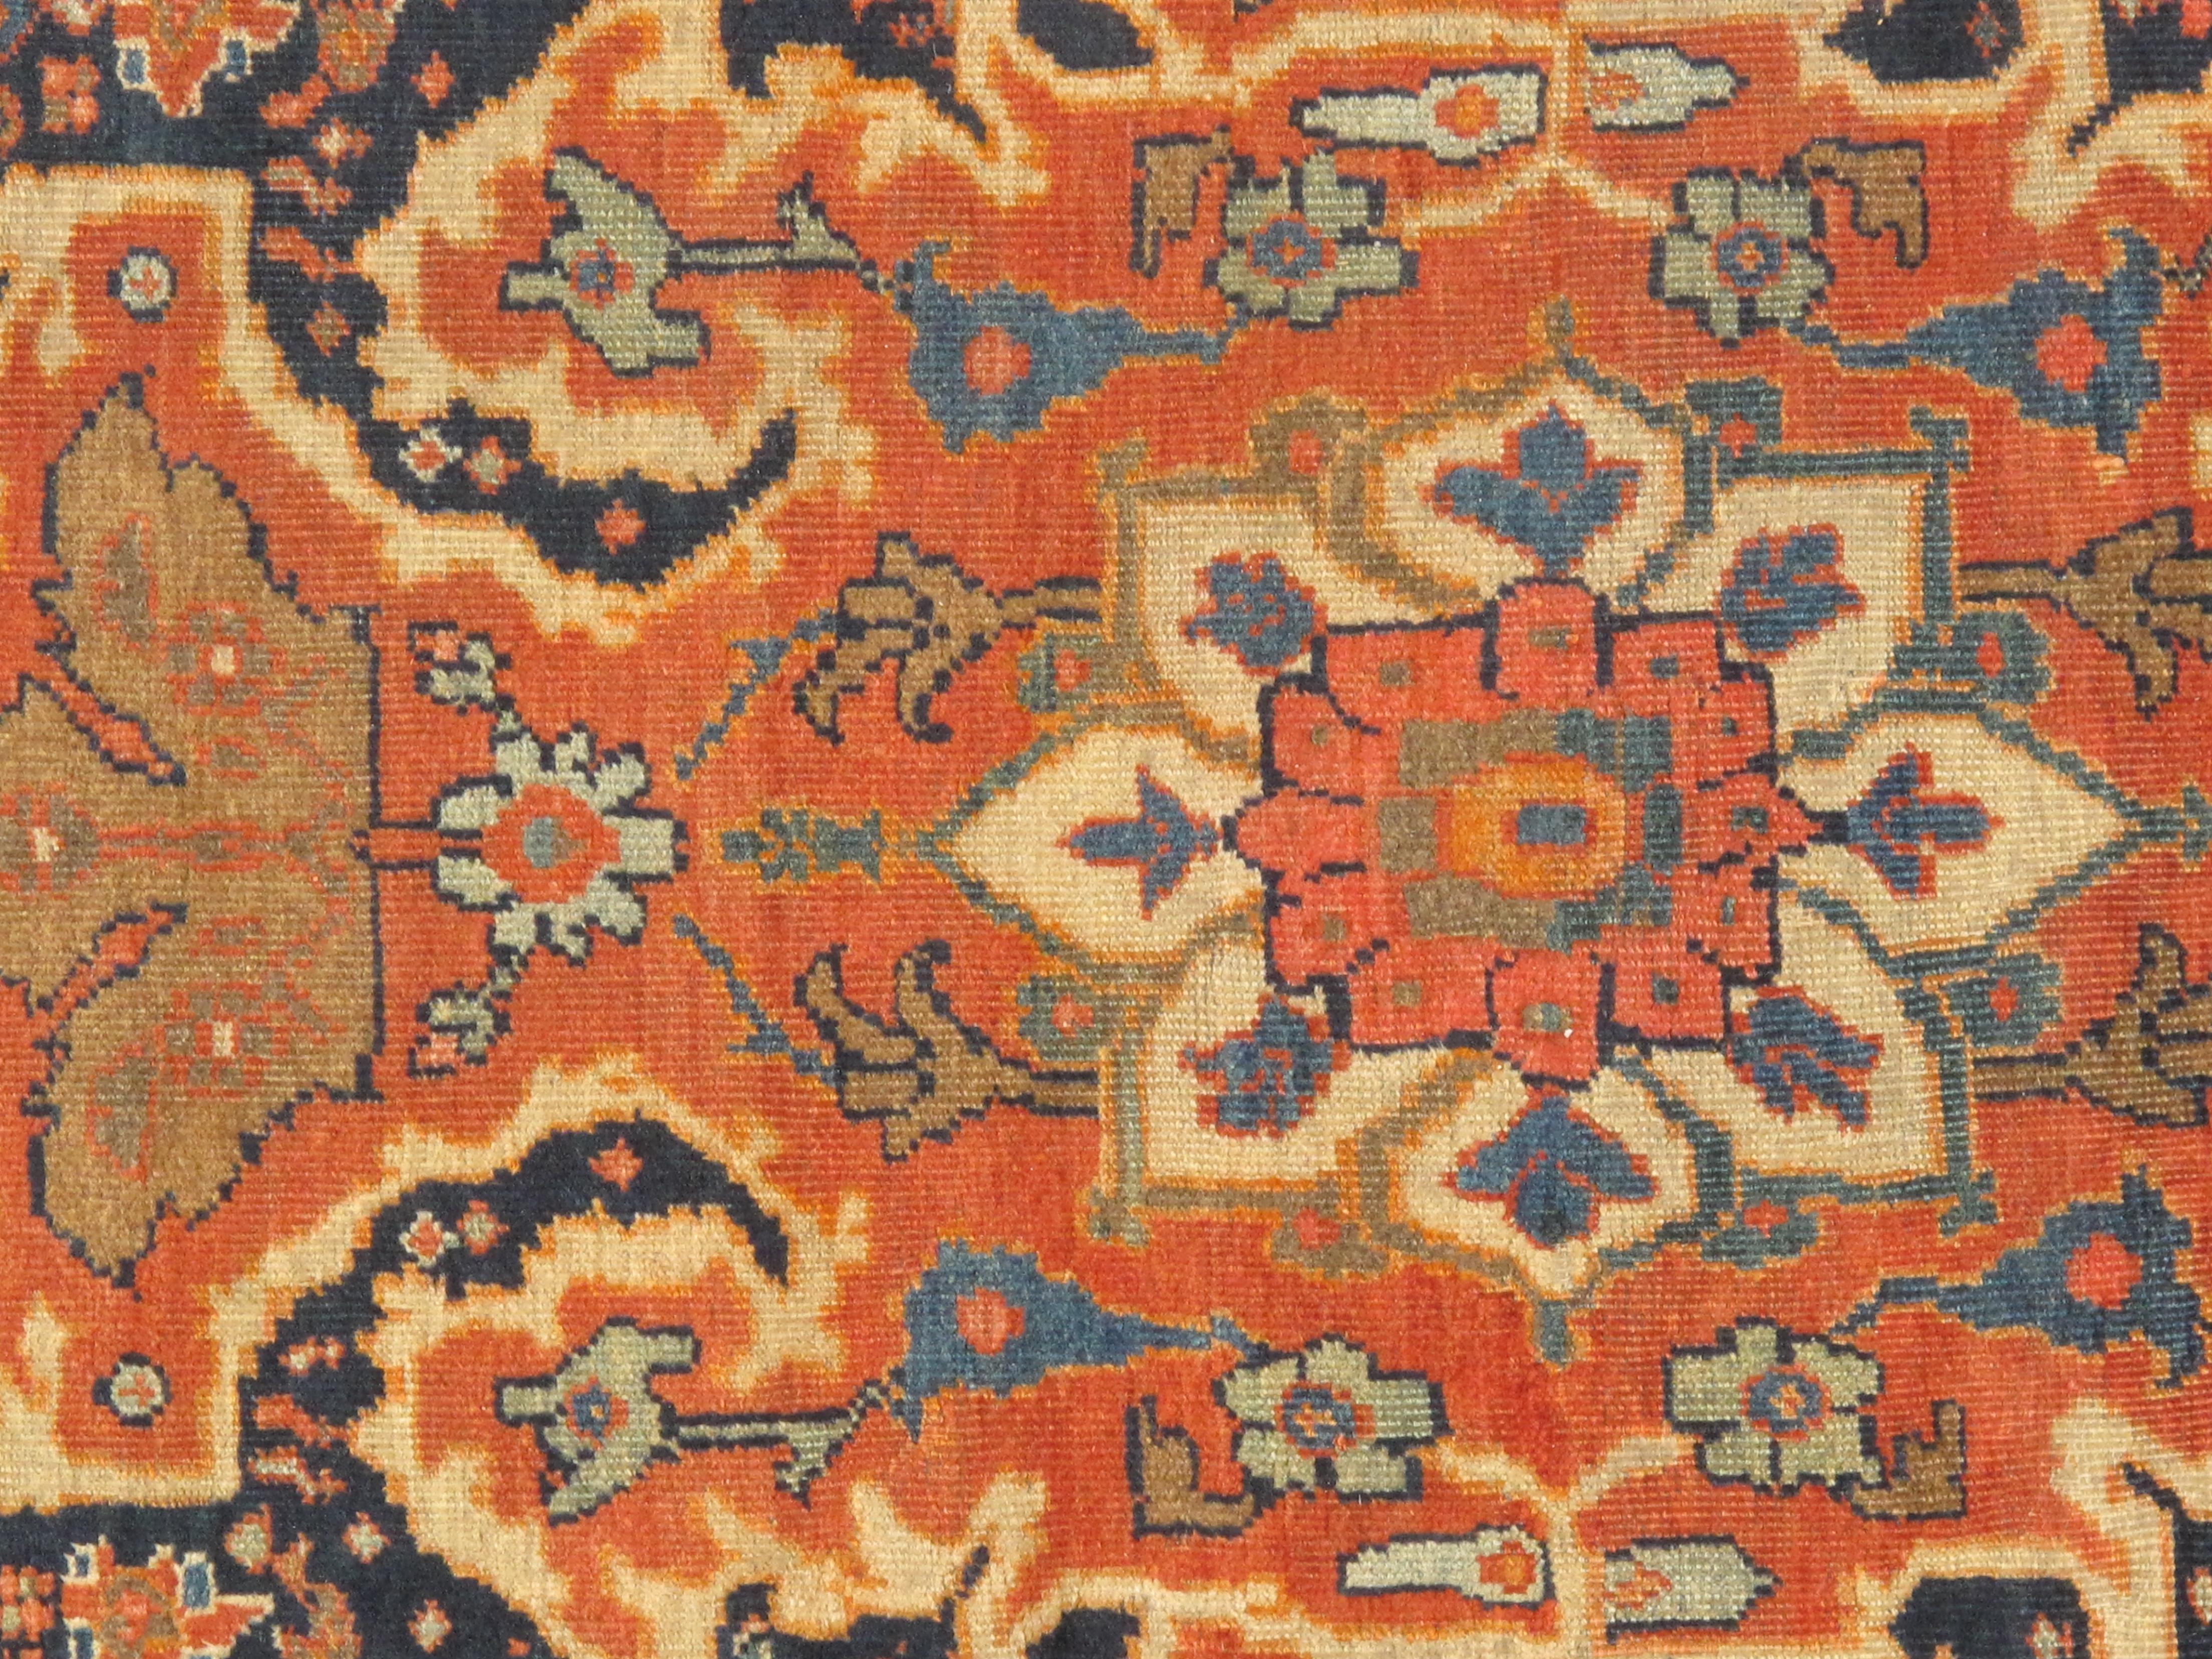 Antique Melody Collection'S. Die handgefertigte, handgeknüpfte Konstruktion dieses Teppichs sorgt für Langlebigkeit, so dass er viele Jahre halten wird. Jeder Teppich ist handgefertigt aus 100% hochwertiger Lammwolle. Mit seinem zeitlosen Stil ist